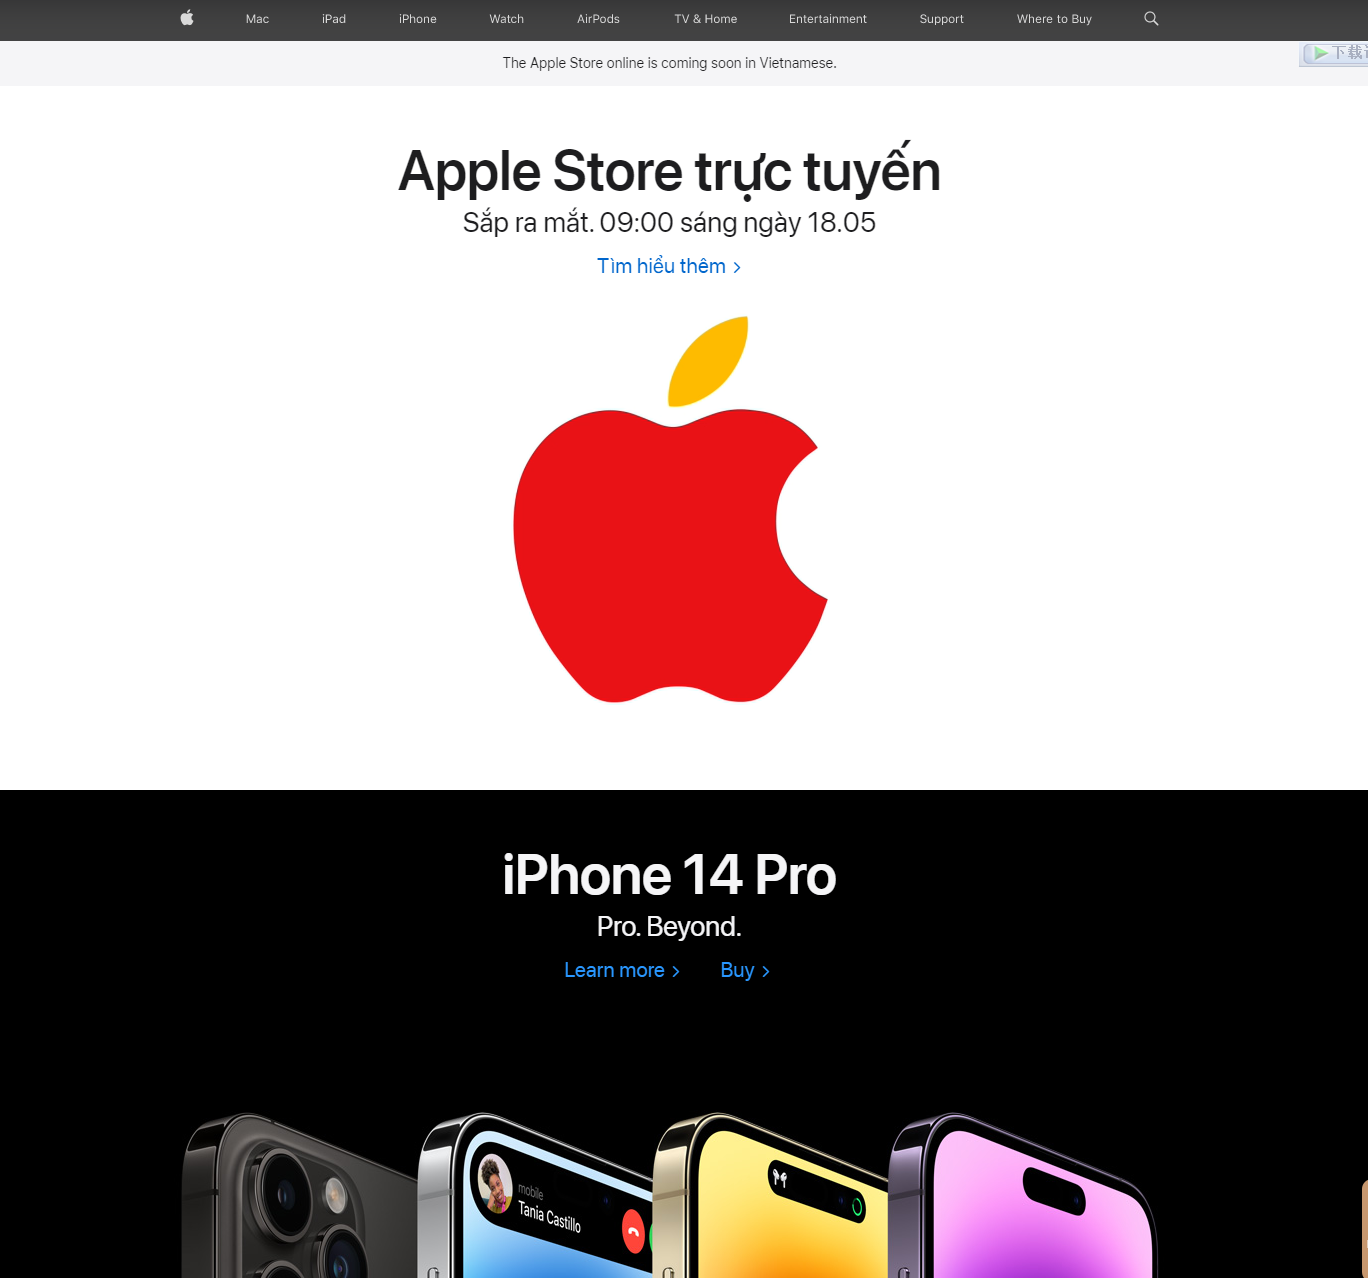 苹果官方宣布越南 Apple Store 在线商店 5 月 18 日推出